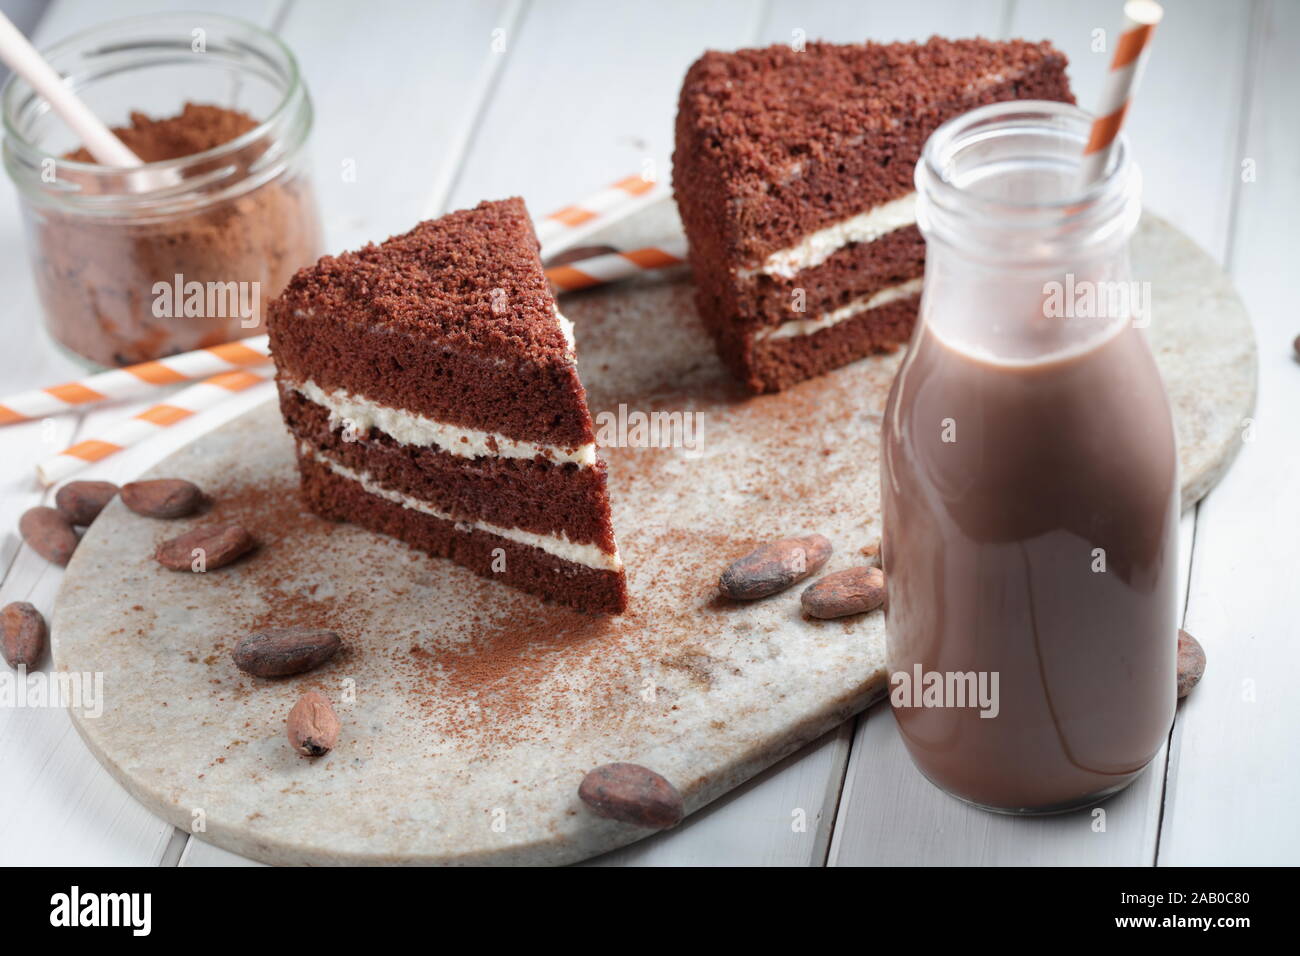 Deux tranches de gâteau au chocolat, chocolat chaud dans une bouteille, poudre de cacao et de haricots sur une table rustique Banque D'Images